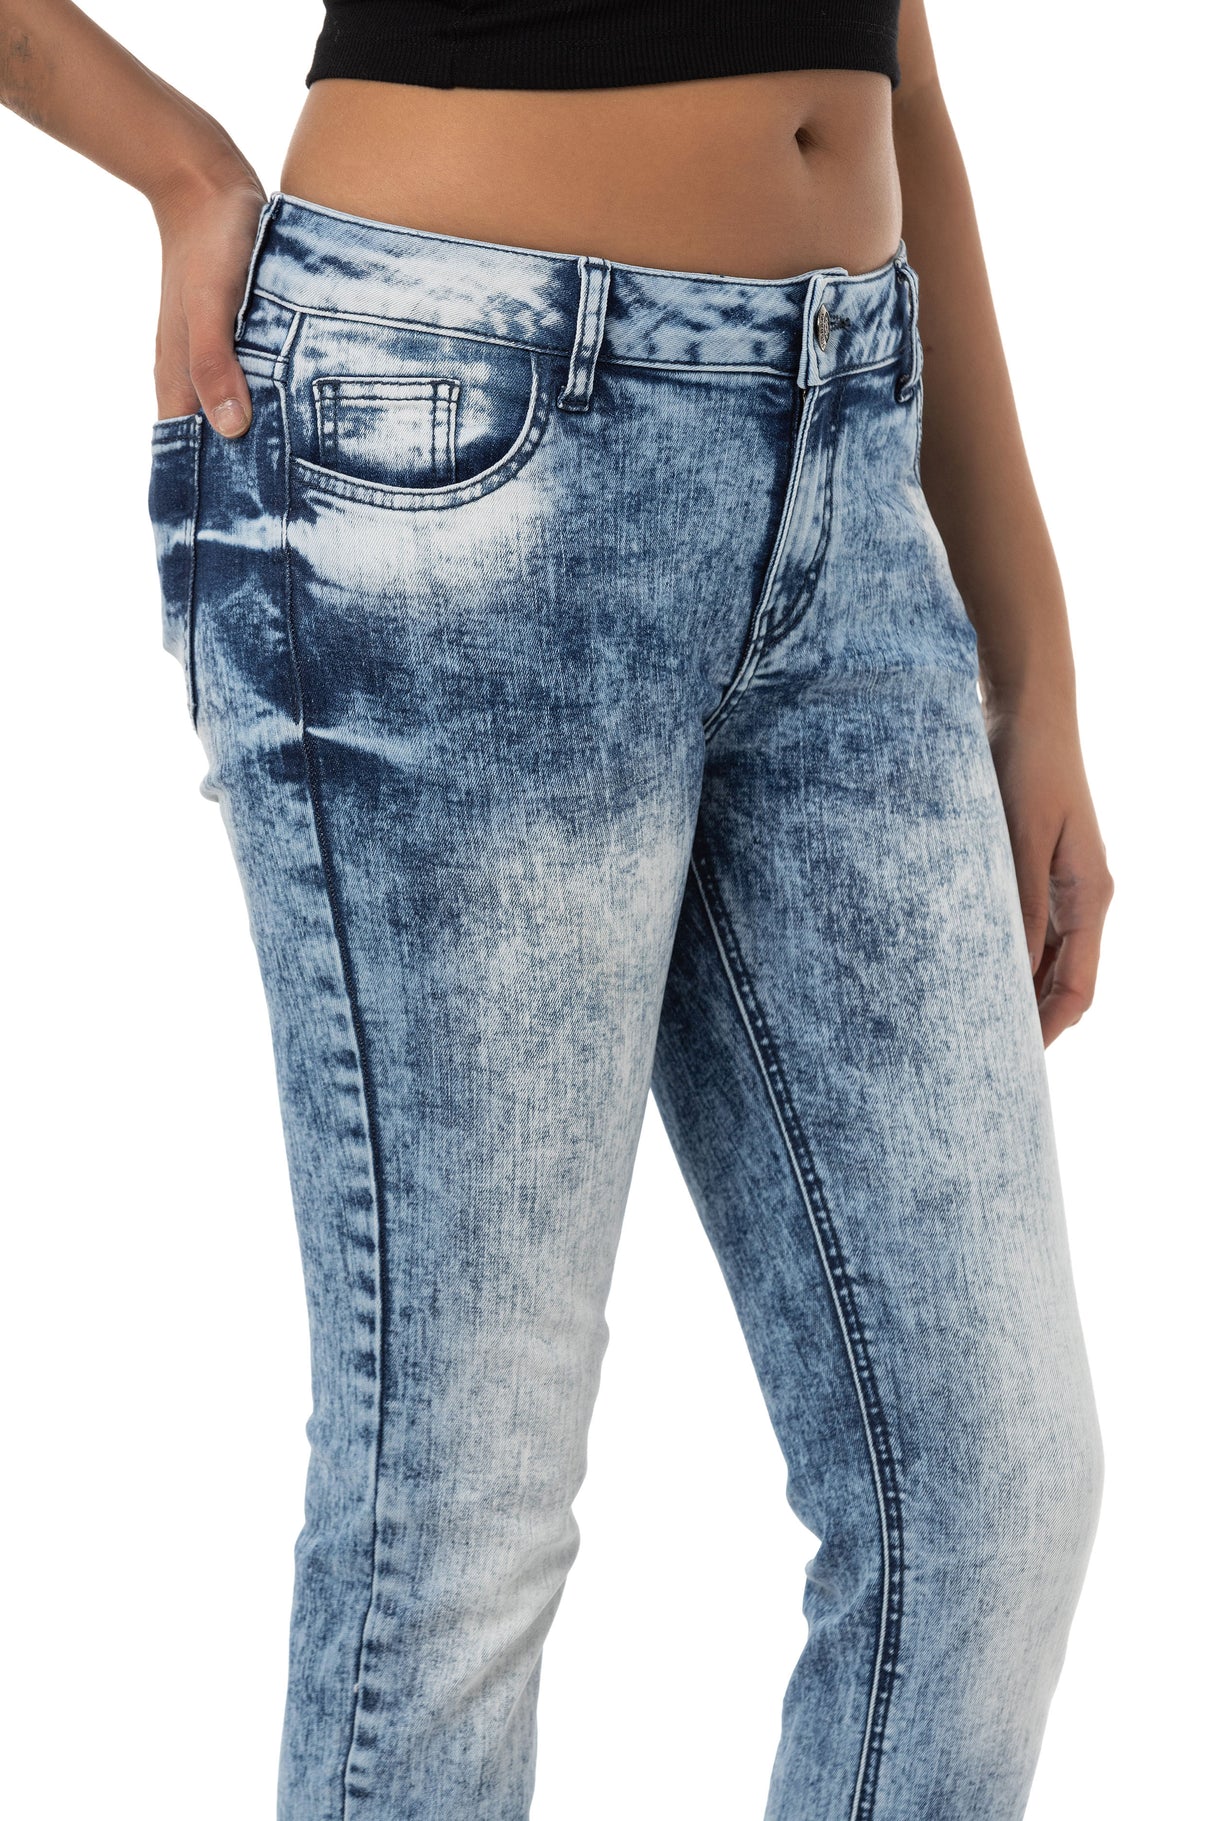 WD459 Mujeres Jeans de ajuste delgado en un aspecto moderno